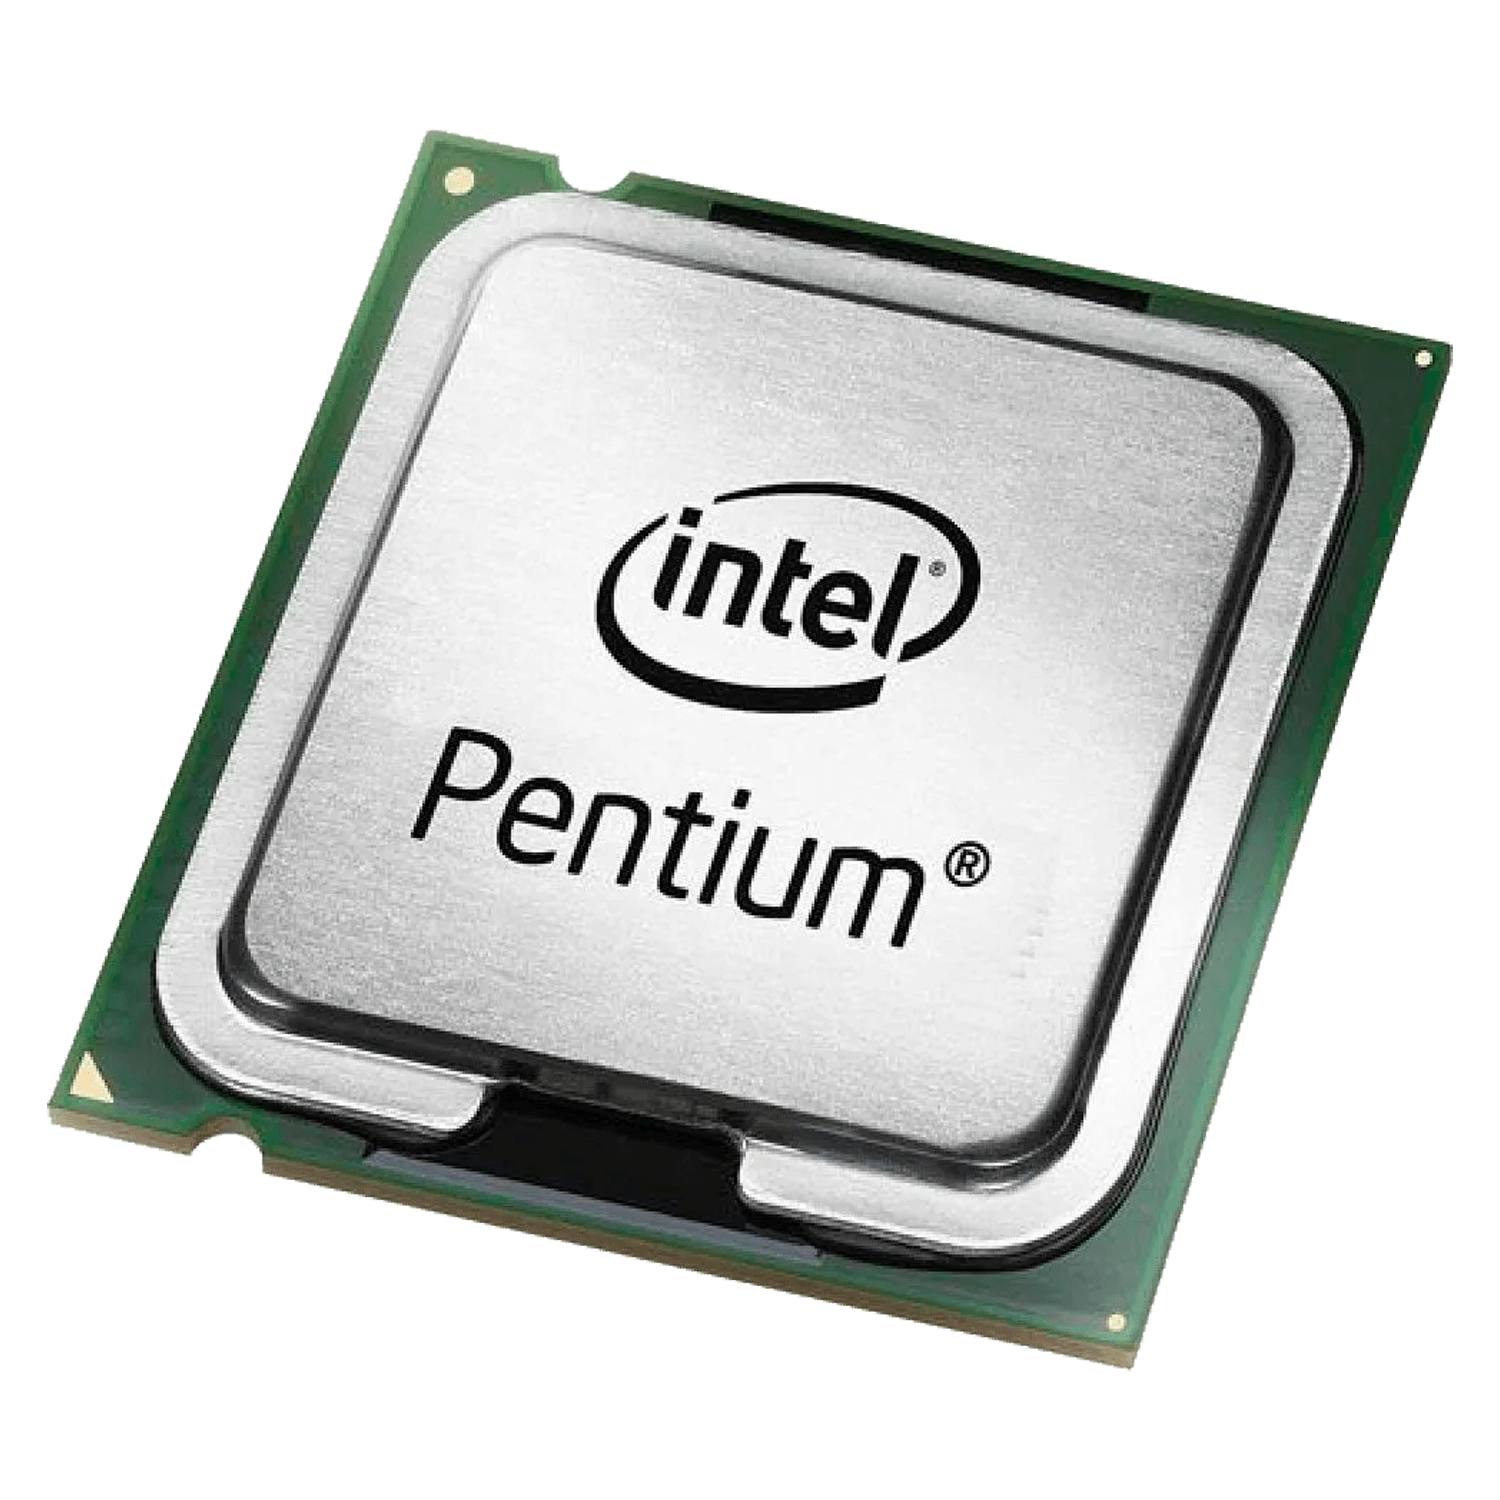 Processador Intel Pentium G2030 Pull OEM Socket 1155 2 Core 2 Threands Cache 3MB